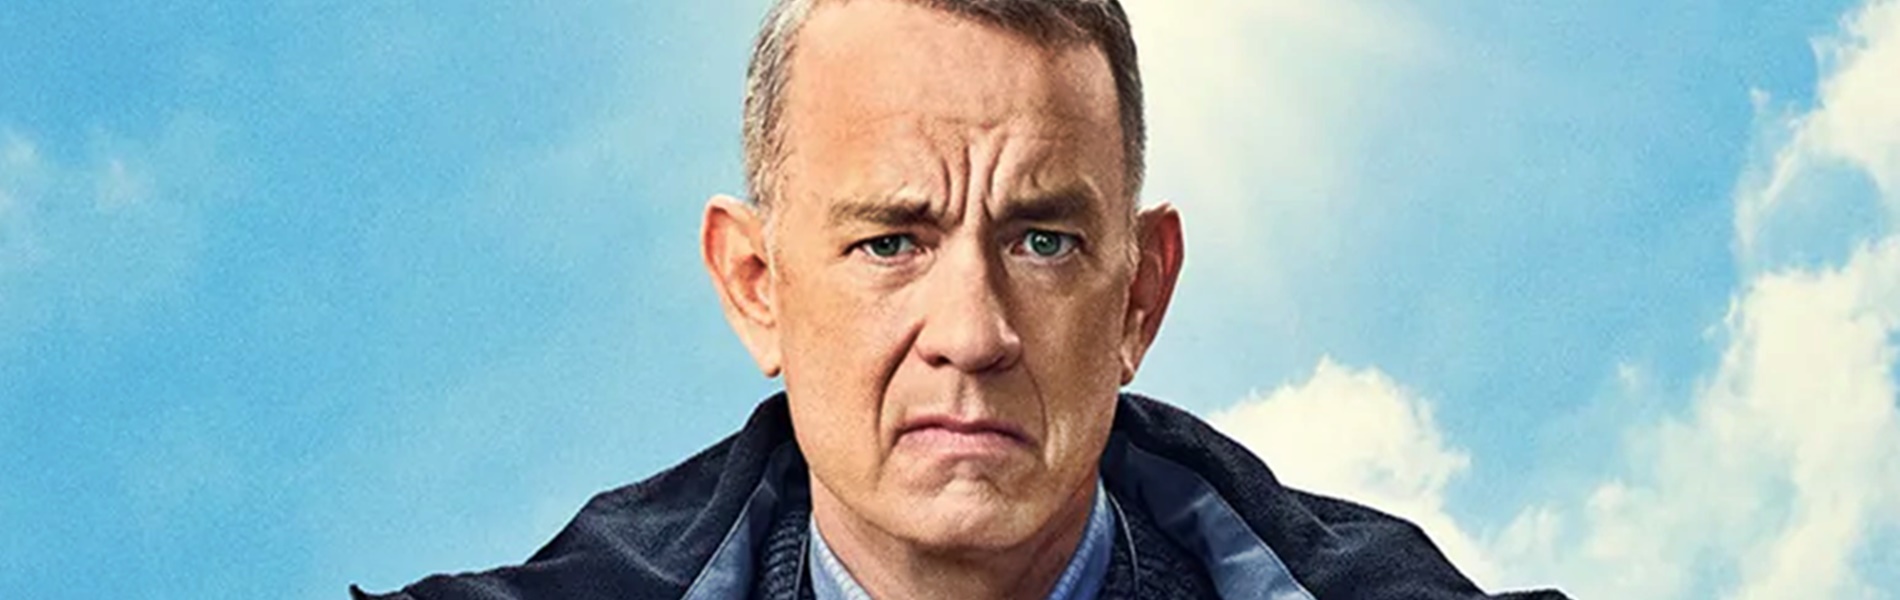 Előzetest kapott Tom Hanks legújabb filmje, amiben a színész egy mogorva idős bácsit alakít - Az ember, akit Ottónak hívtak